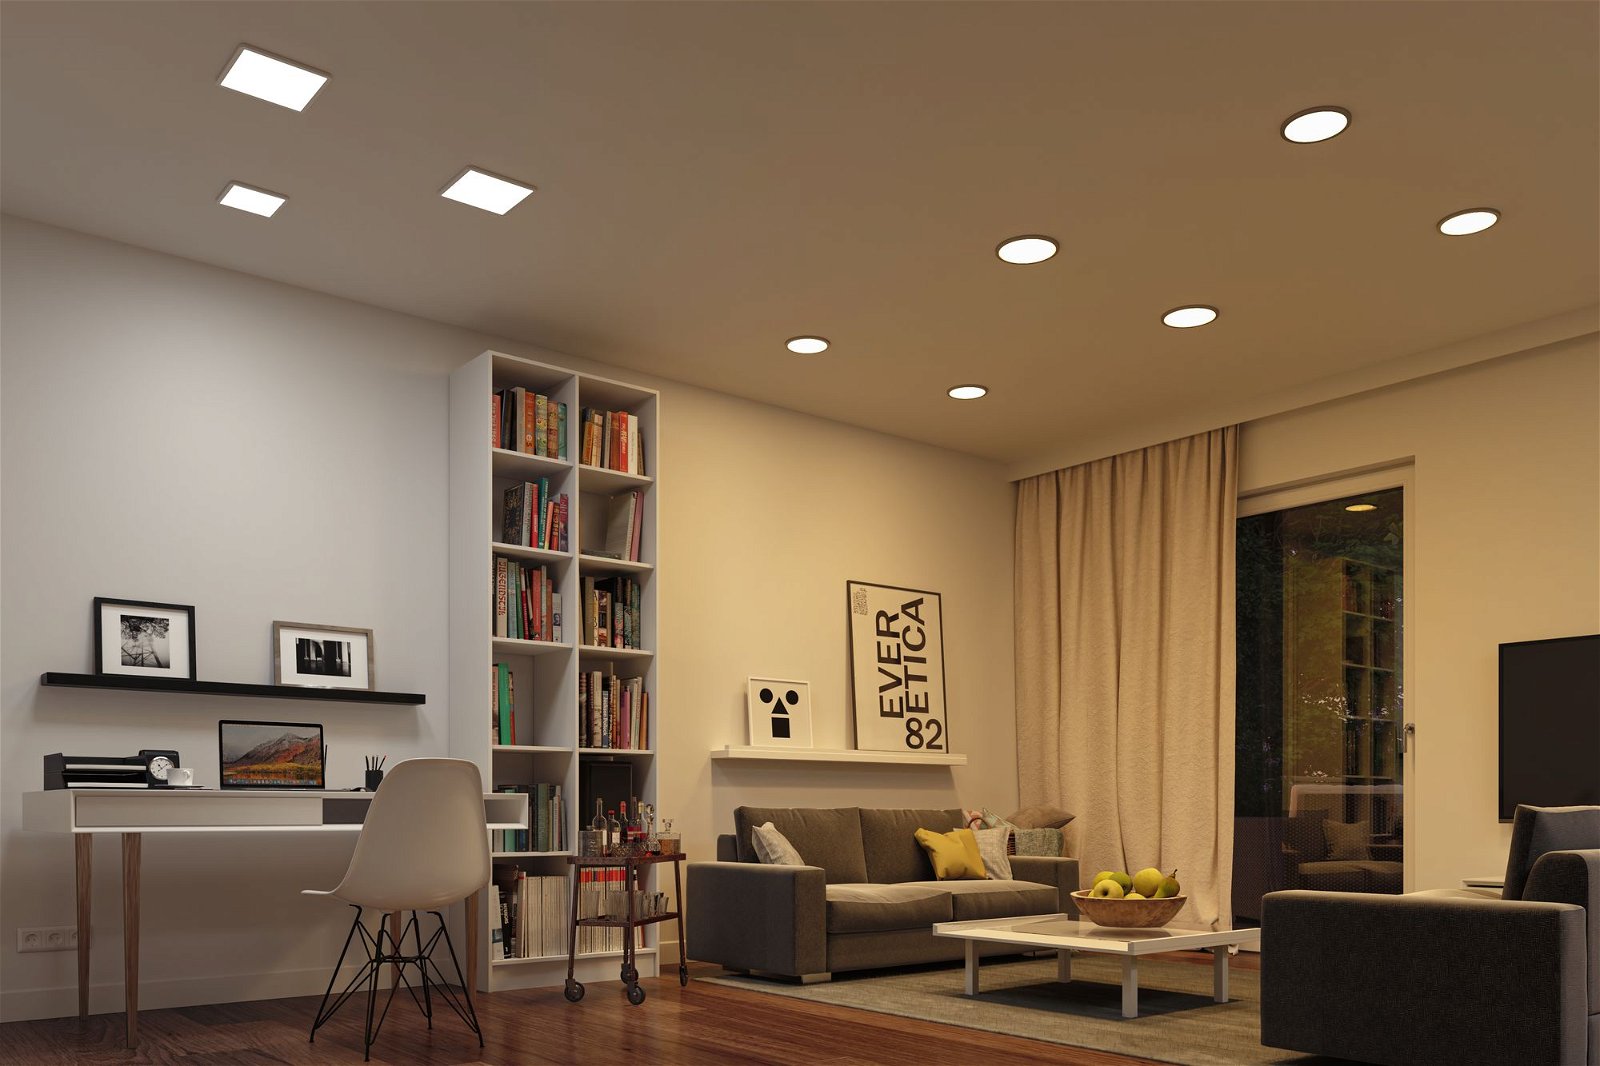 VariFit Panneau encastré LED Smart Home Zigbee 3.0 Areo IP44 carré 230x230mm 16W 1400lm Tunable White Blanc gradable